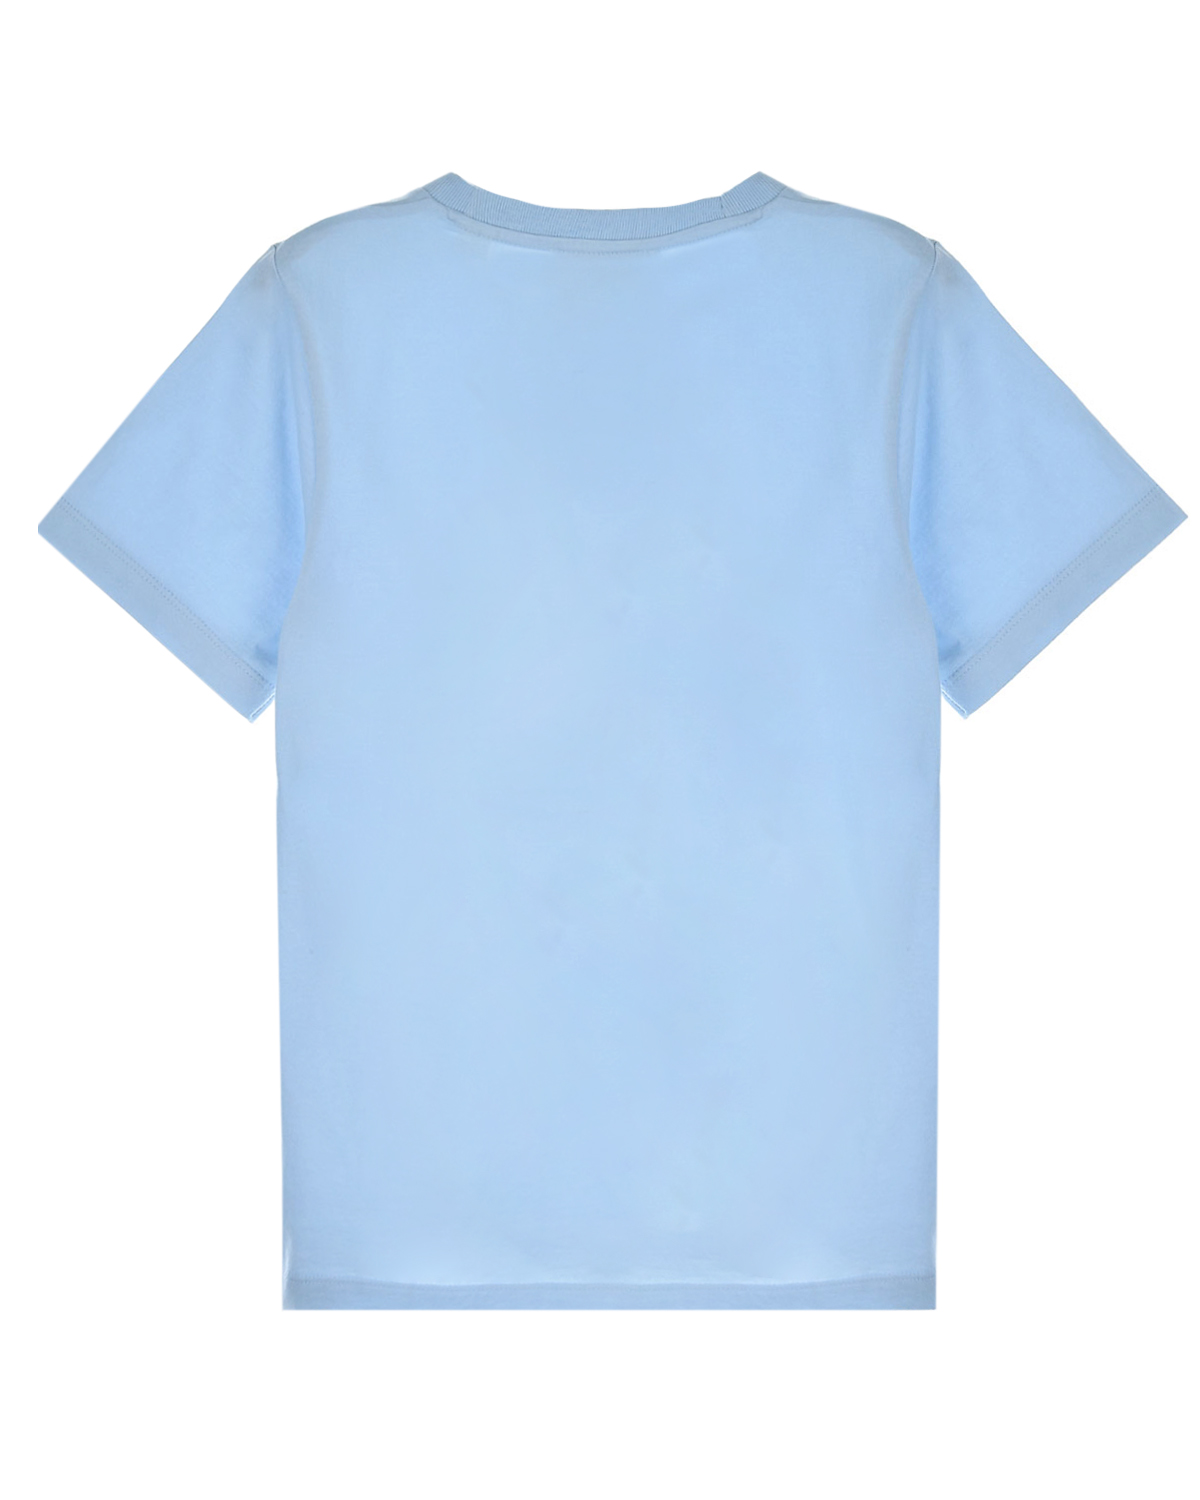 Голубая футболка с принтом "якорь" Les Coyotes de Paris детская, размер 140, цвет голубой - фото 2